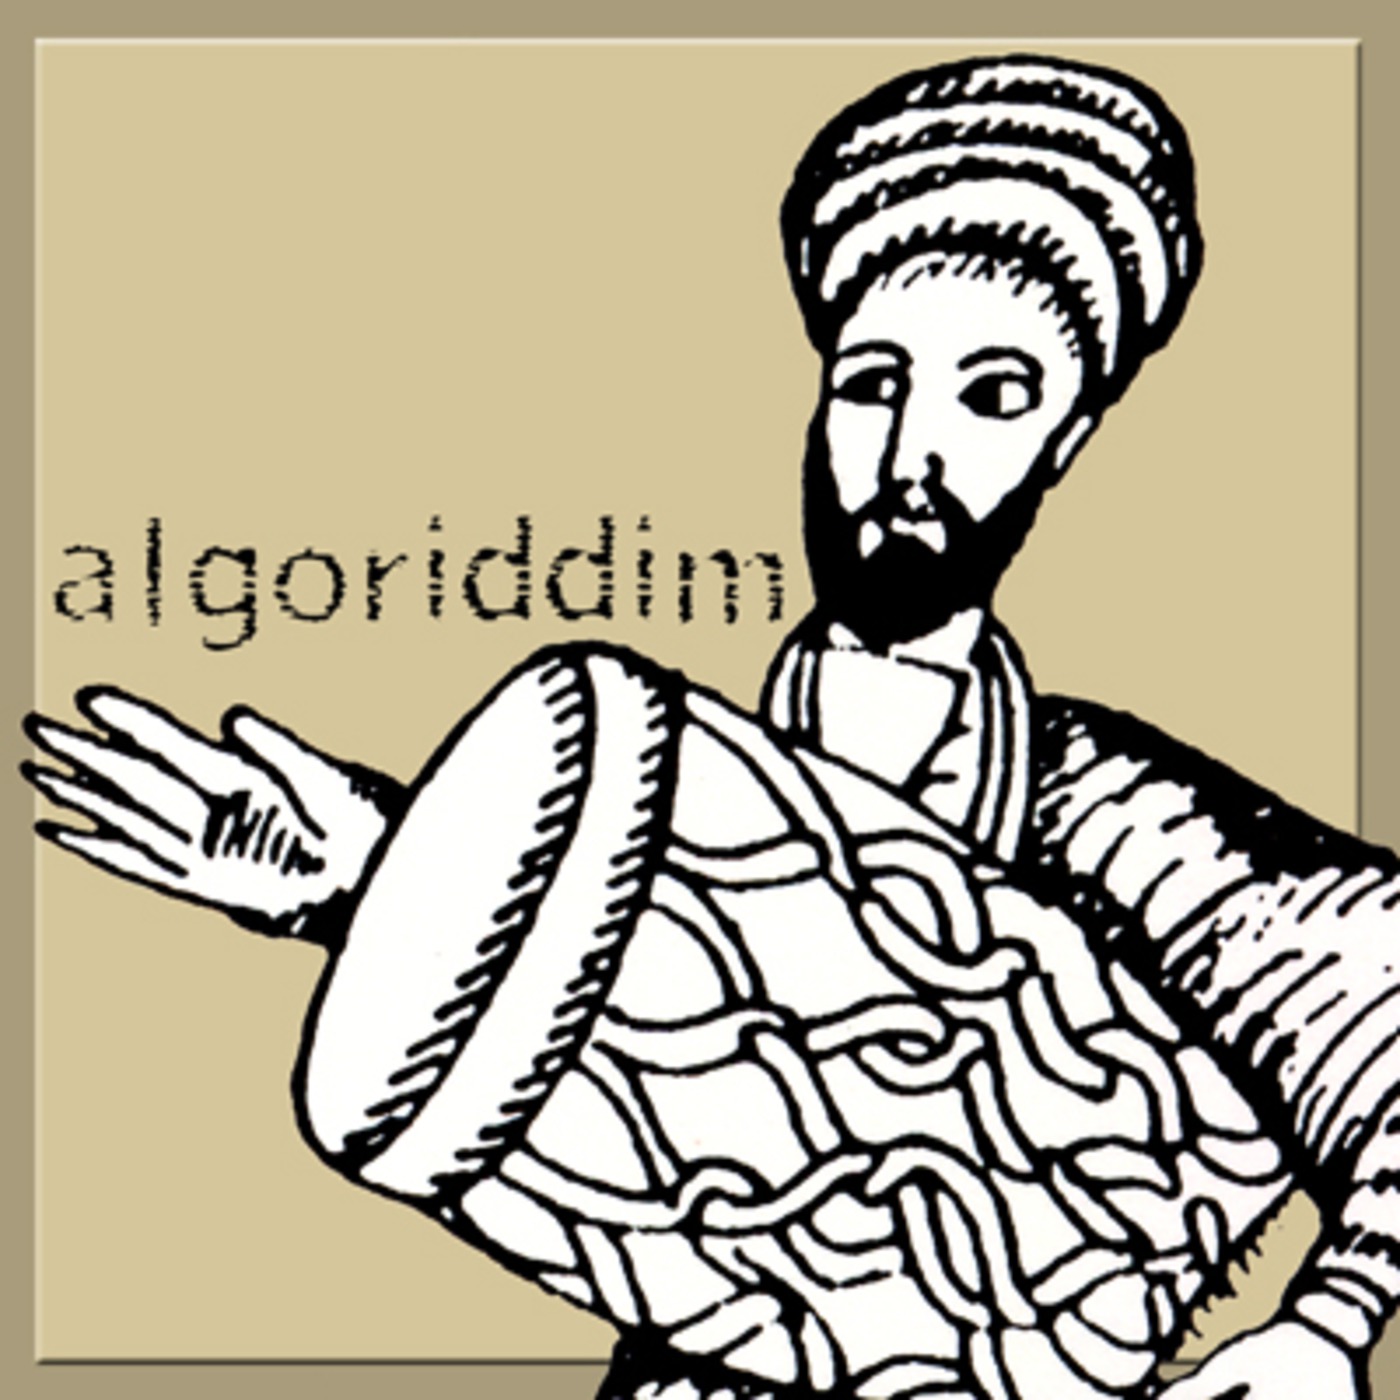 Algoriddim 20150109: Wailing